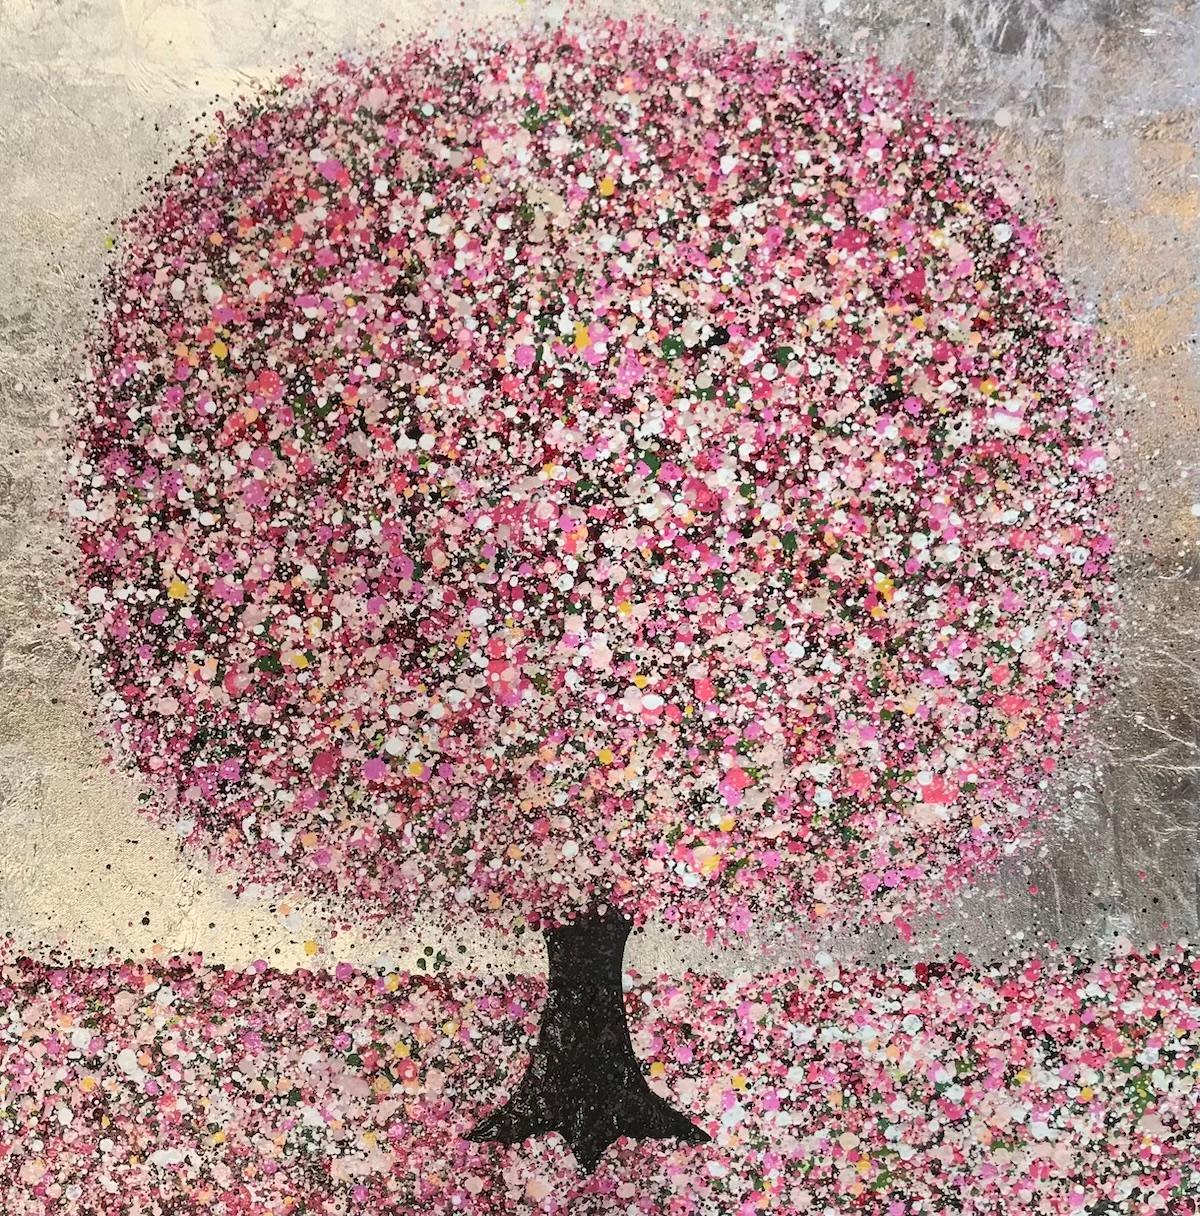 Glückliche Blüte und ein silberner Himmel von Nicky Chubb [2020]
original und handsigniert vom Künstler 
Acryl auf Leinwand
Bildgröße: H:76 cm x B:76 cm
Gesamtgröße des ungerahmten Werks: H:76 cm x B:76 cm x T:4cm
Ungerahmt verkauft
Bitte beachten